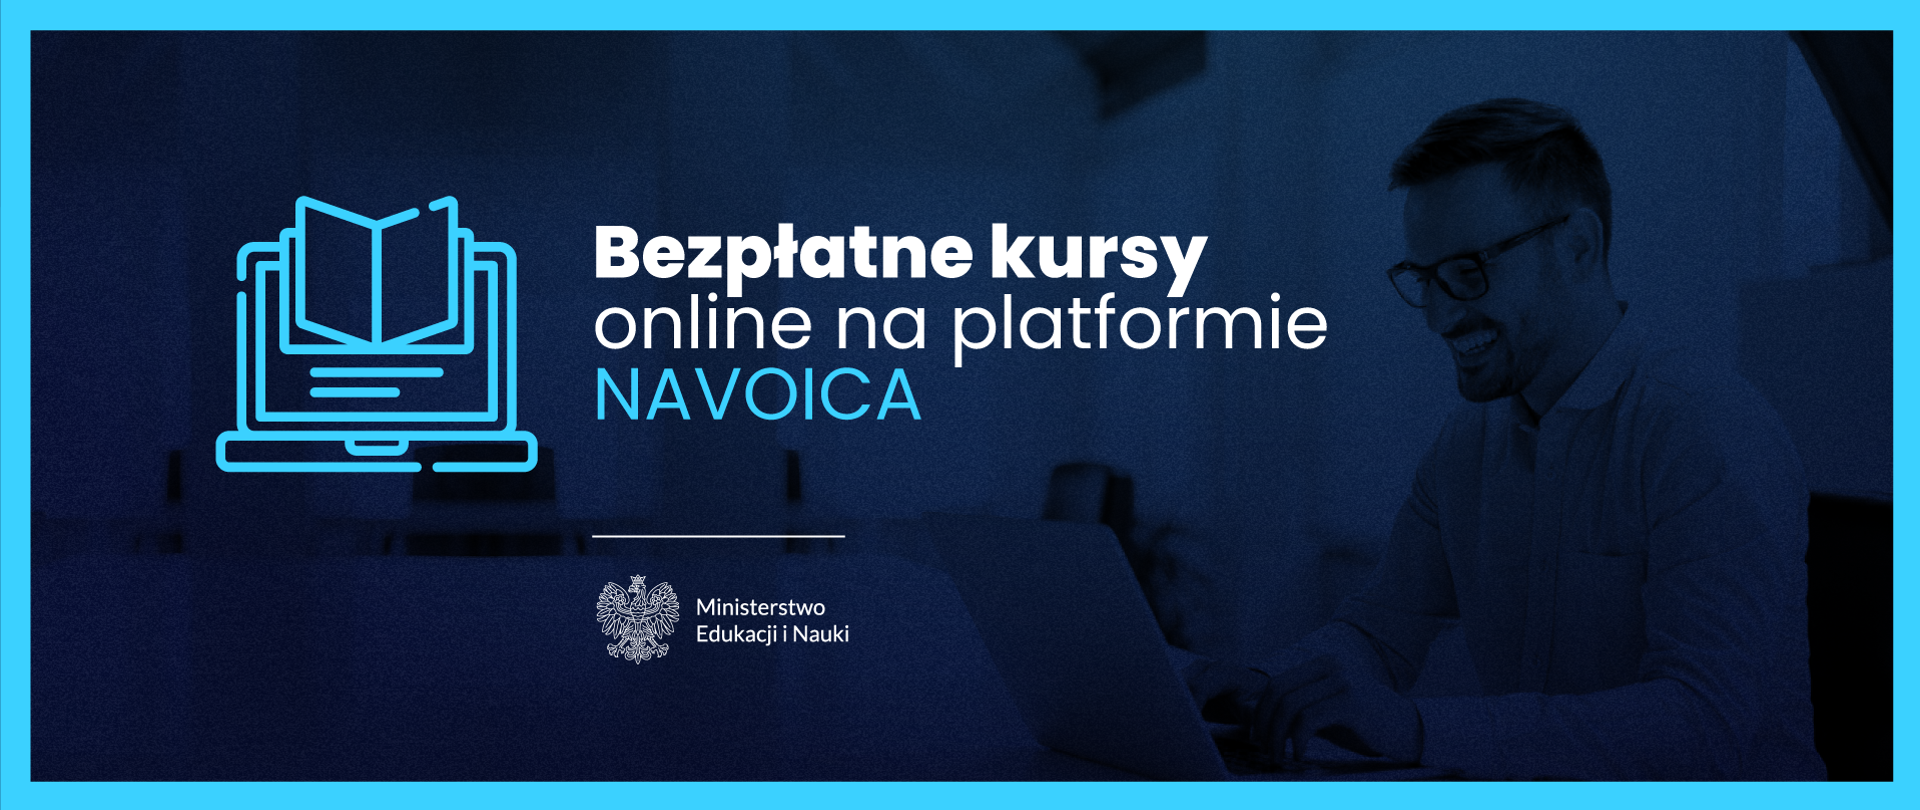 Grafika - na niebieskim tle sylwetka człowieka przed monitorem, stylizowana książka i napis Bezpłatne kursy online na platformie Navoica.